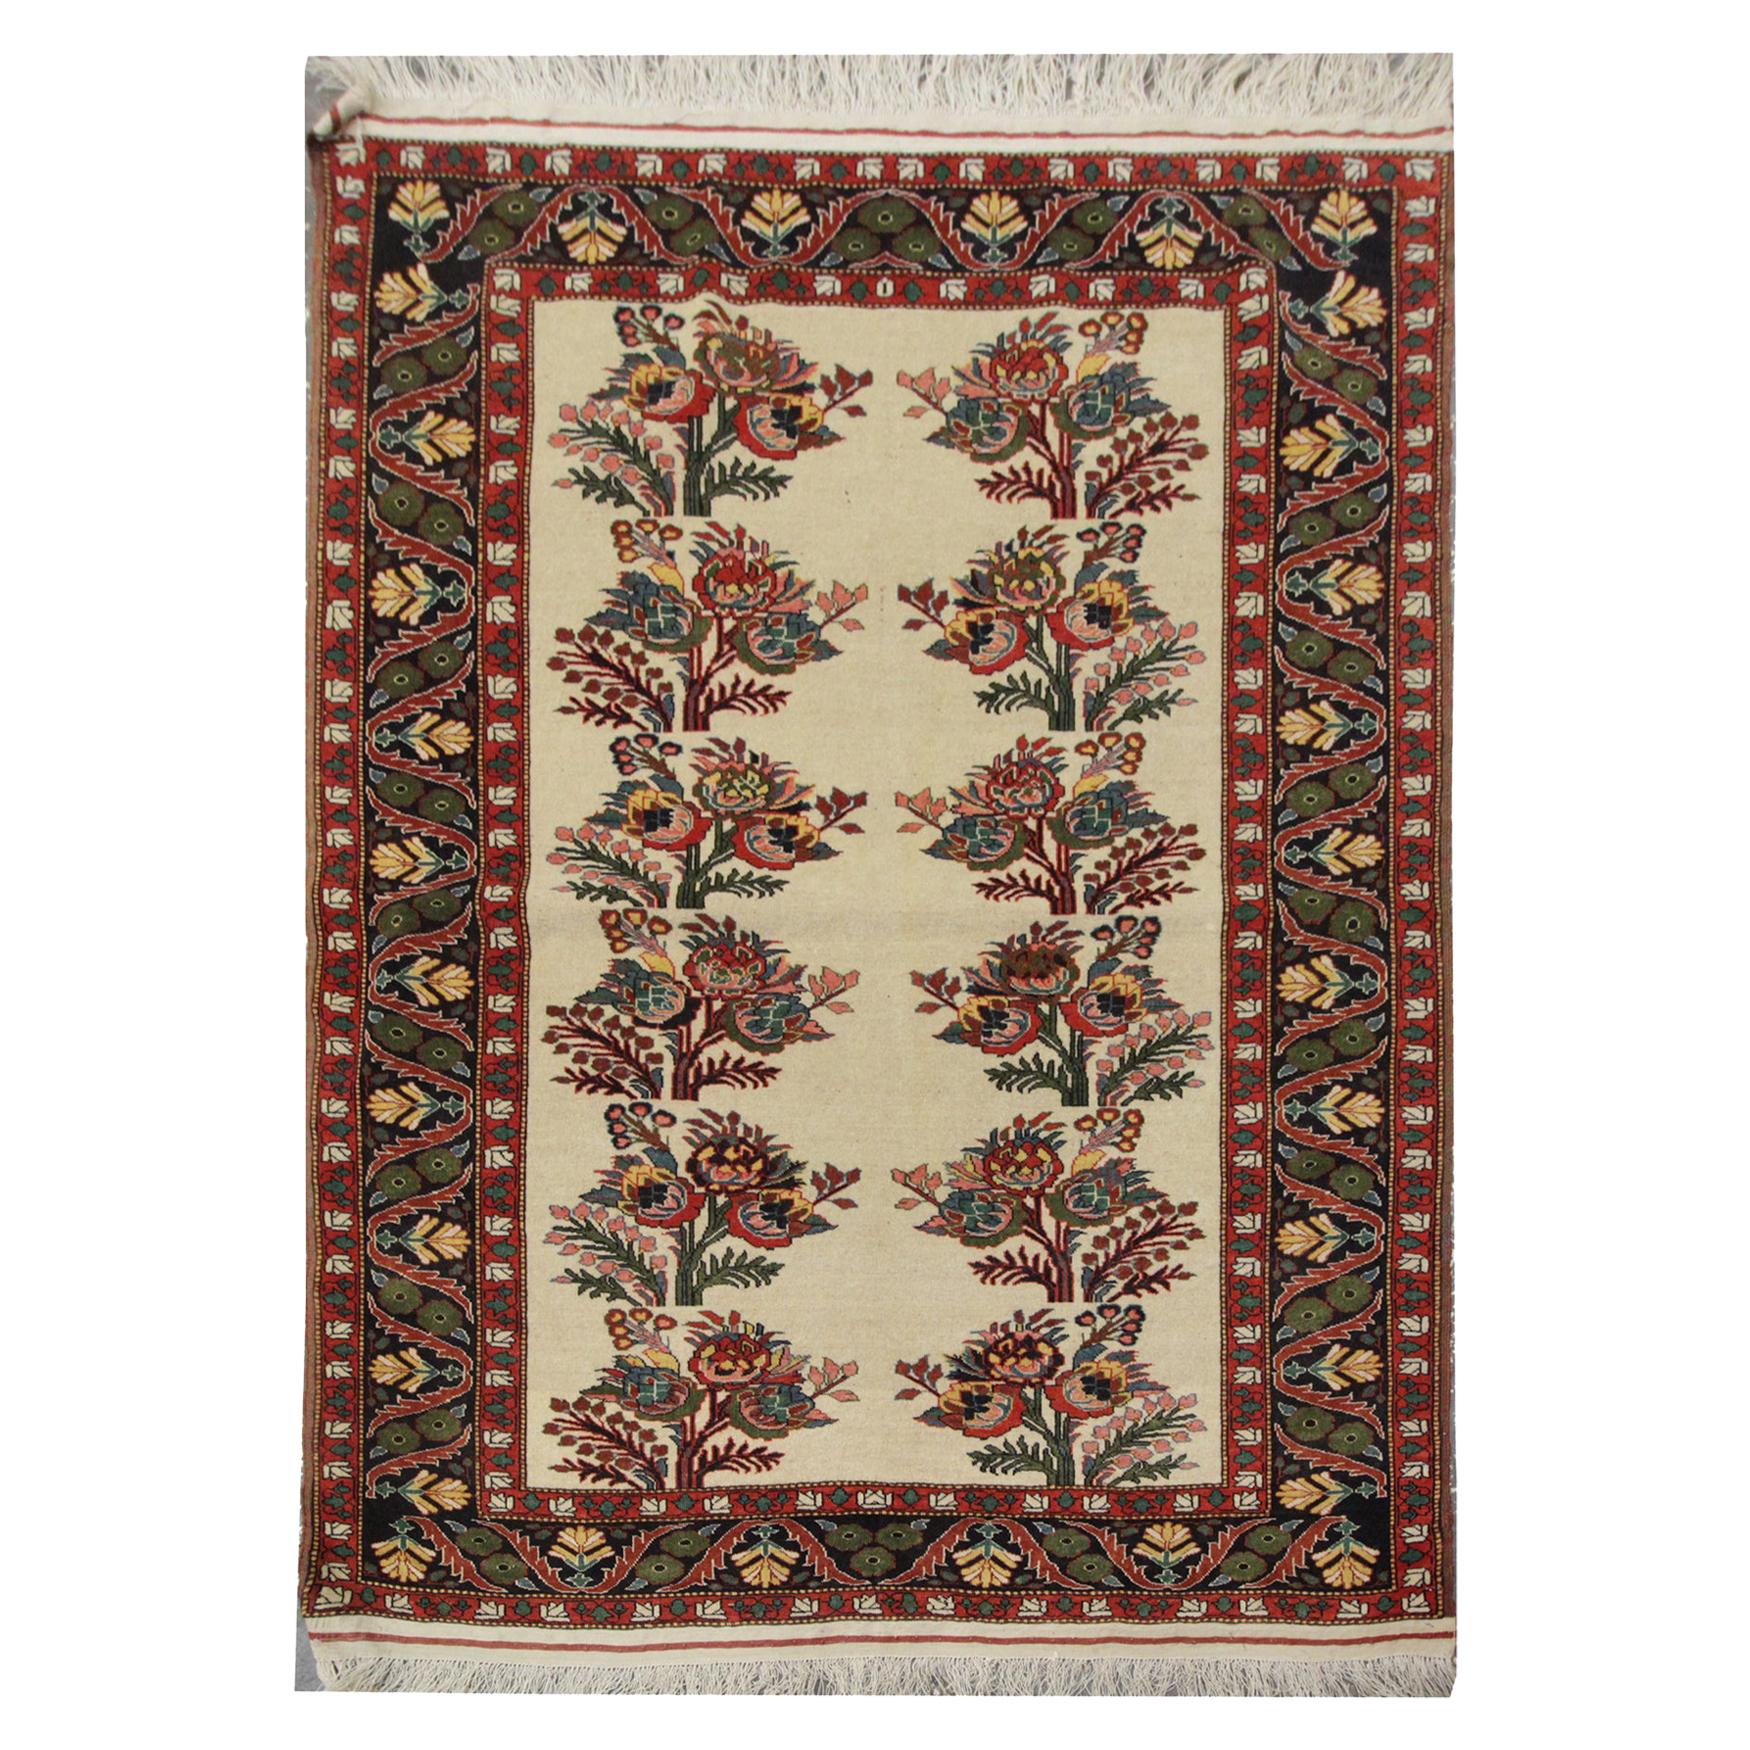 Großer antiker Karabagh-Teppich in hoher Qualität, handgewebt mit floralem Repeat-Muster